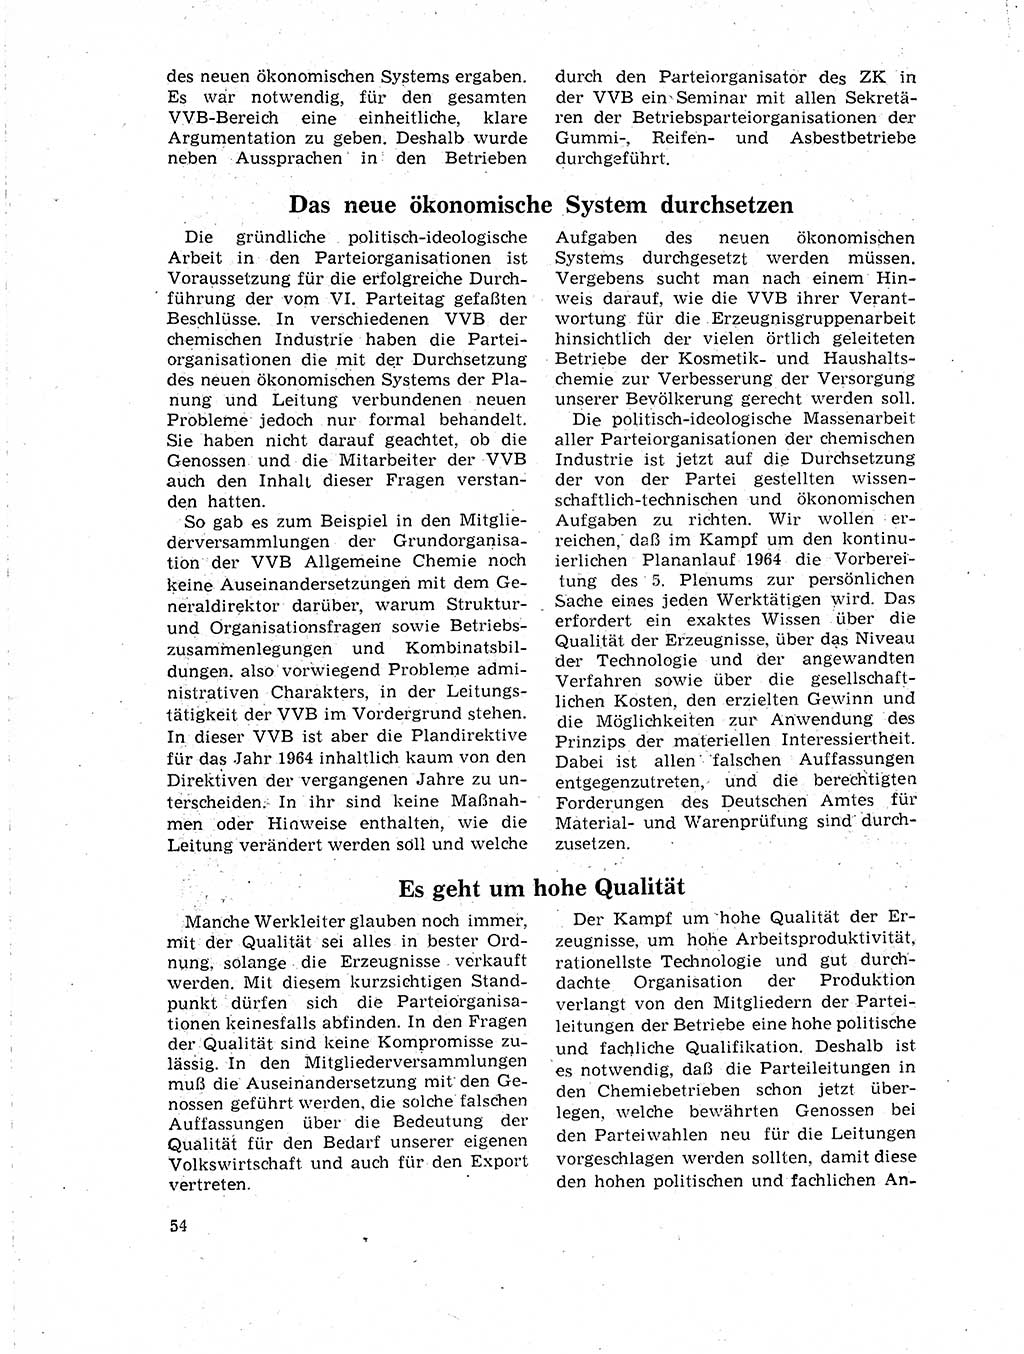 Neuer Weg (NW), Organ des Zentralkomitees (ZK) der SED (Sozialistische Einheitspartei Deutschlands) für Fragen des Parteilebens, 19. Jahrgang [Deutsche Demokratische Republik (DDR)] 1964, Seite 54 (NW ZK SED DDR 1964, S. 54)